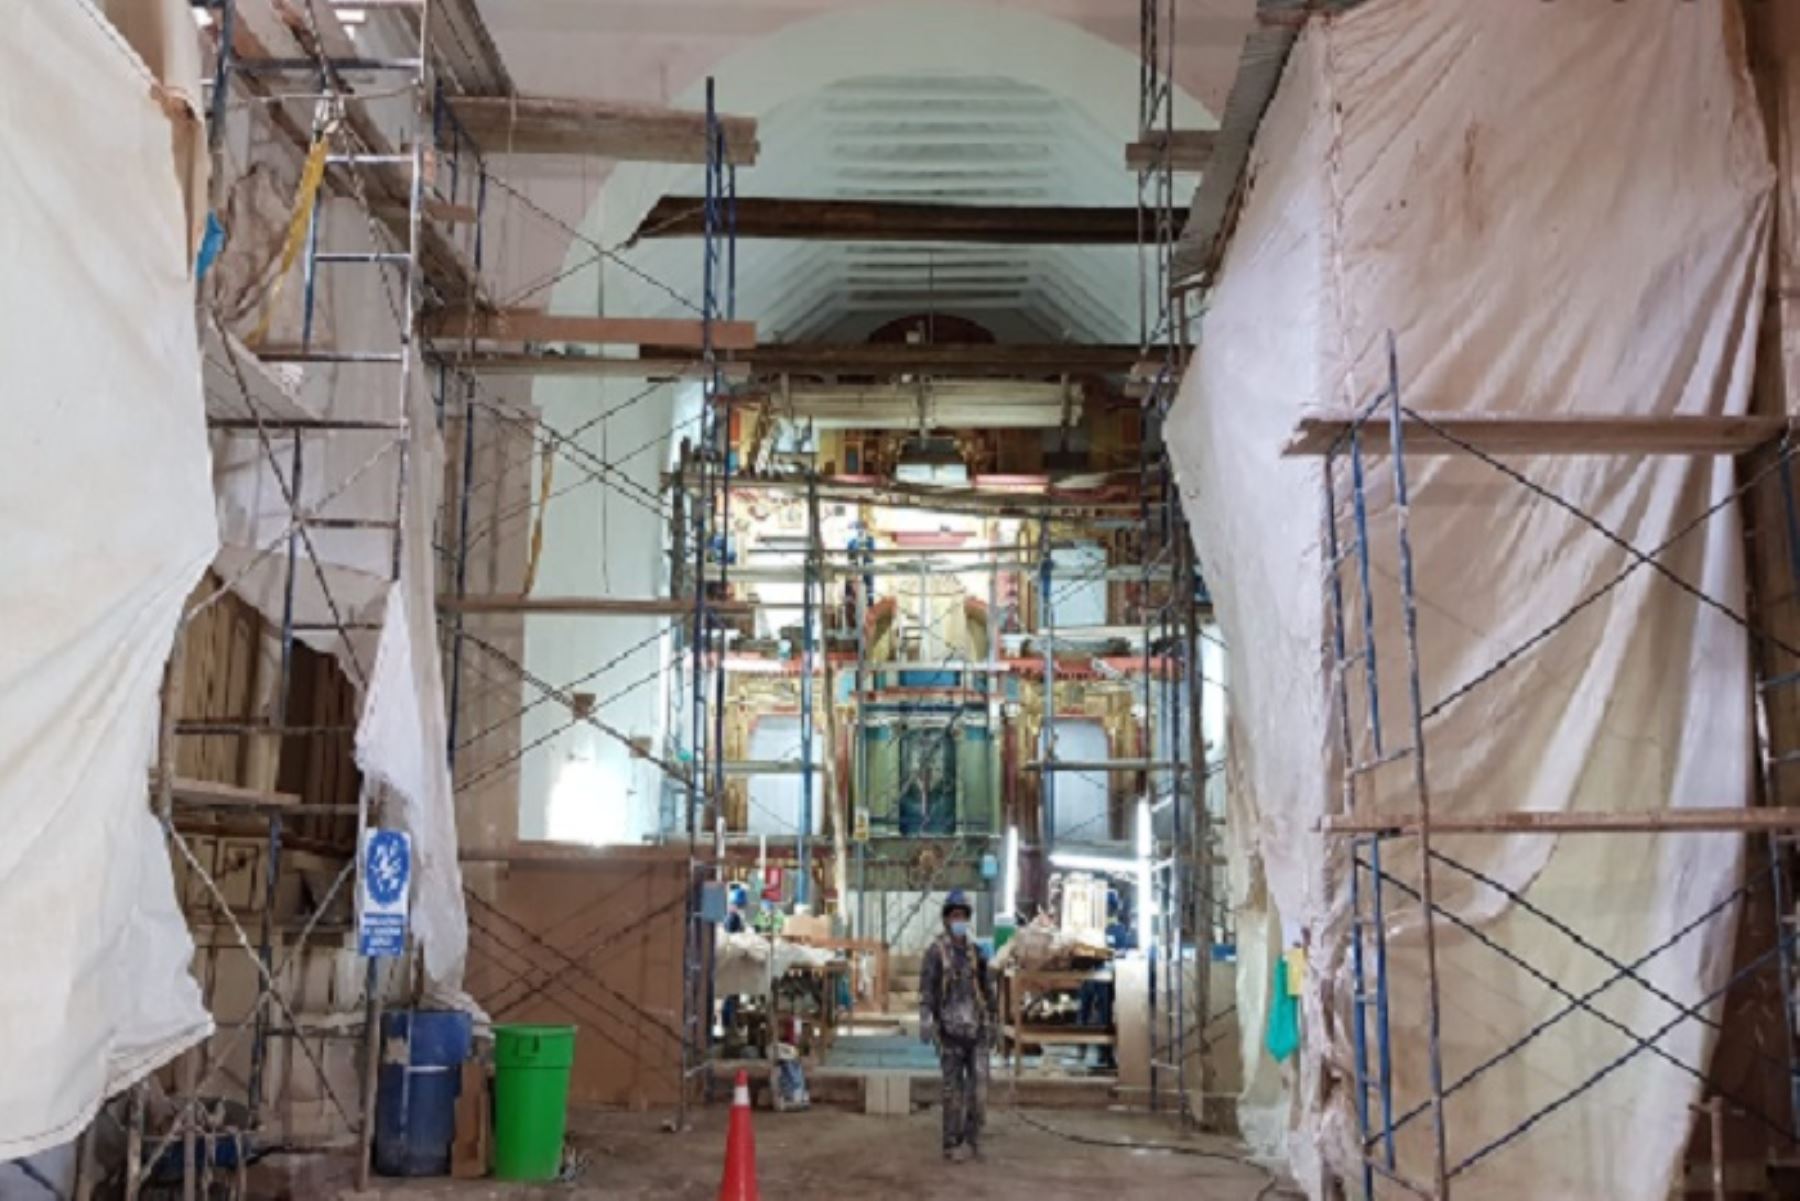 Los trabajos de restauración en el templo de Paucartambo registra un avance del 74 %. Será entregado en agosto próximo.